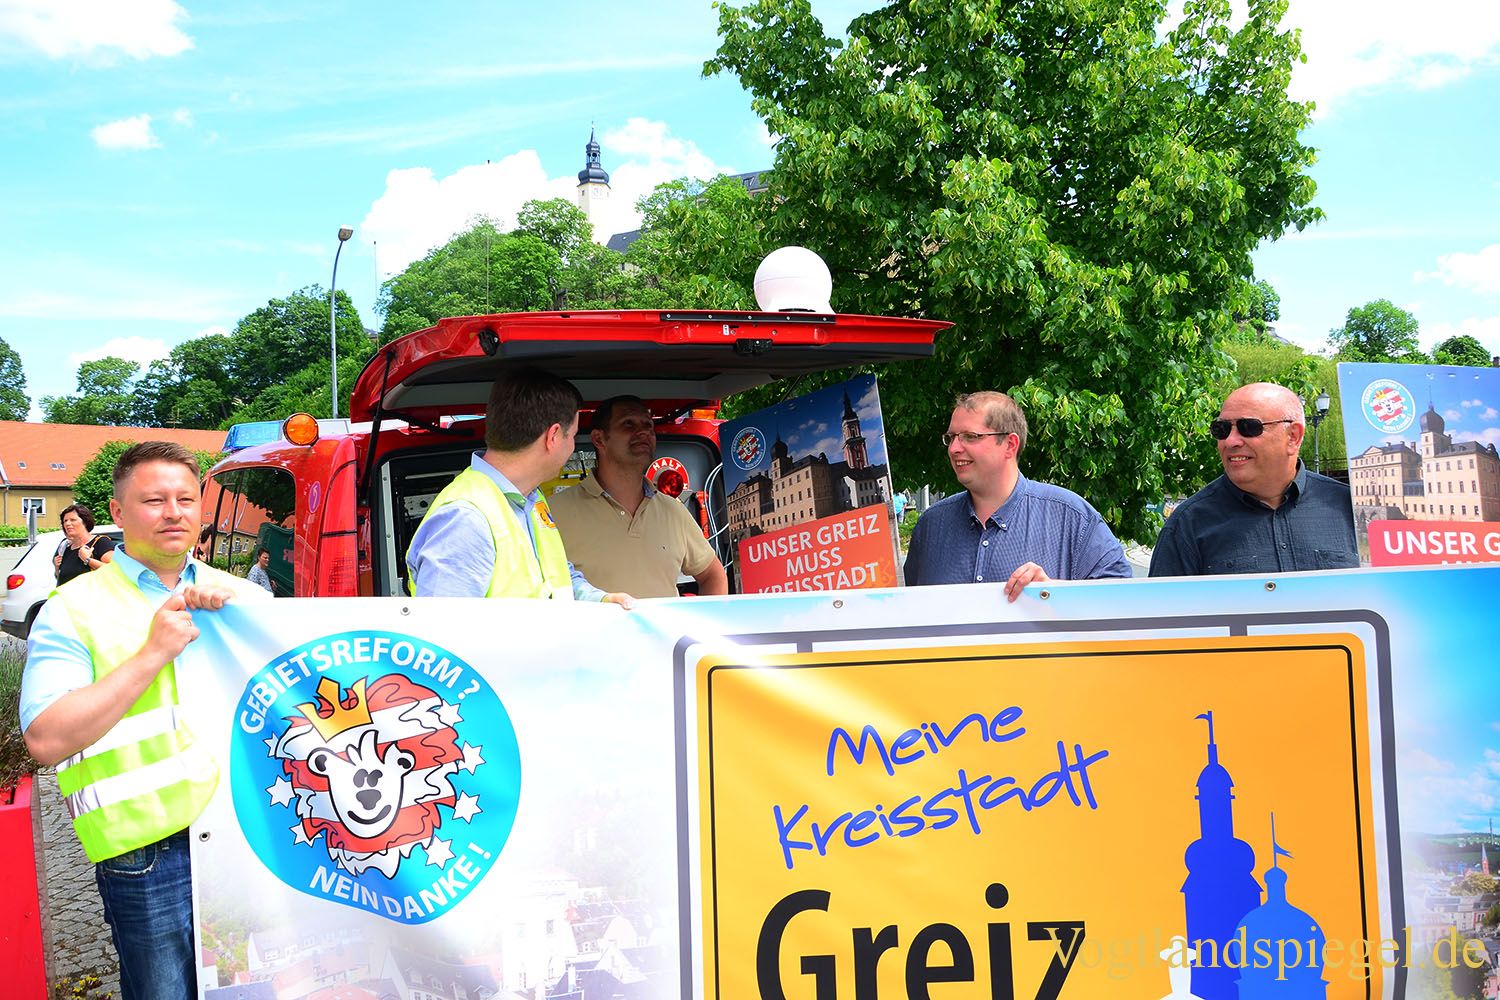 Greizer setzten ein Zeichen für den Erhalt der Kreisstadt Greiz